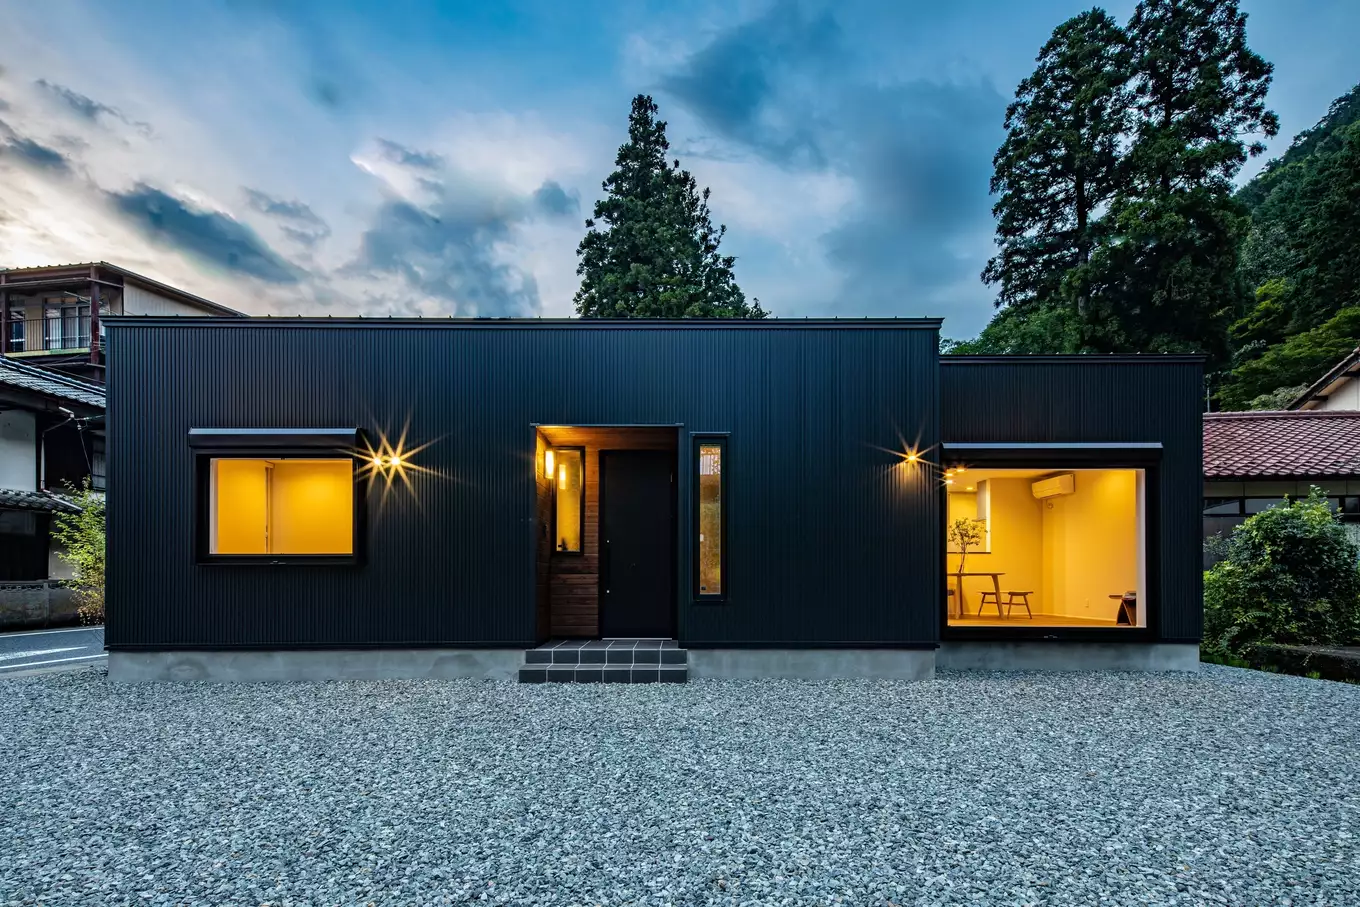 R+house飛騨の施工事例画像。黒いガルバリウム鋼板を外壁に使った平屋画像。